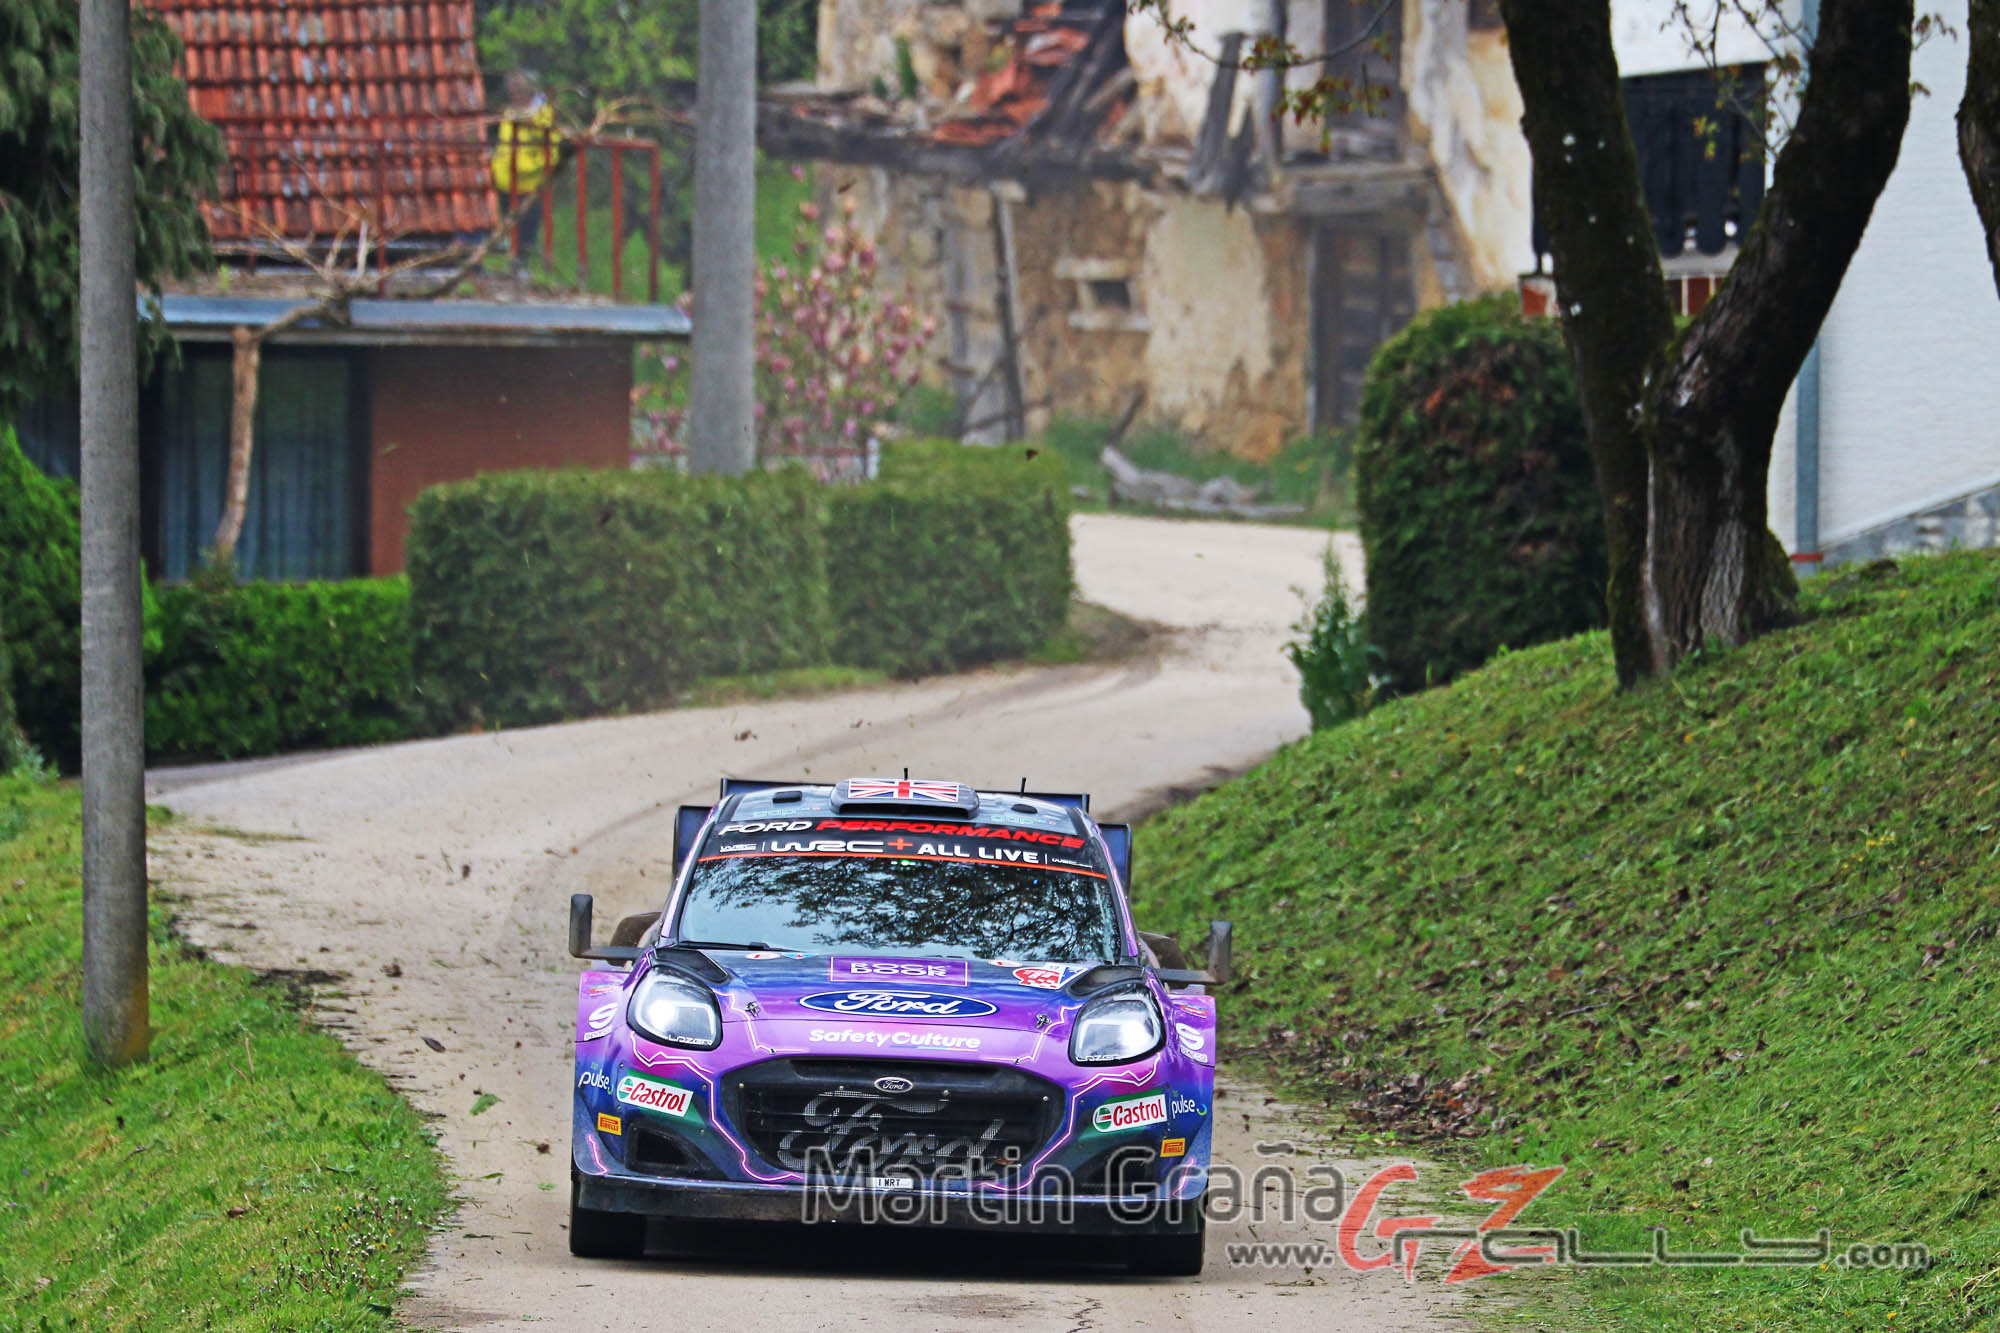 Rally de Croacia WRC - Martin Graña